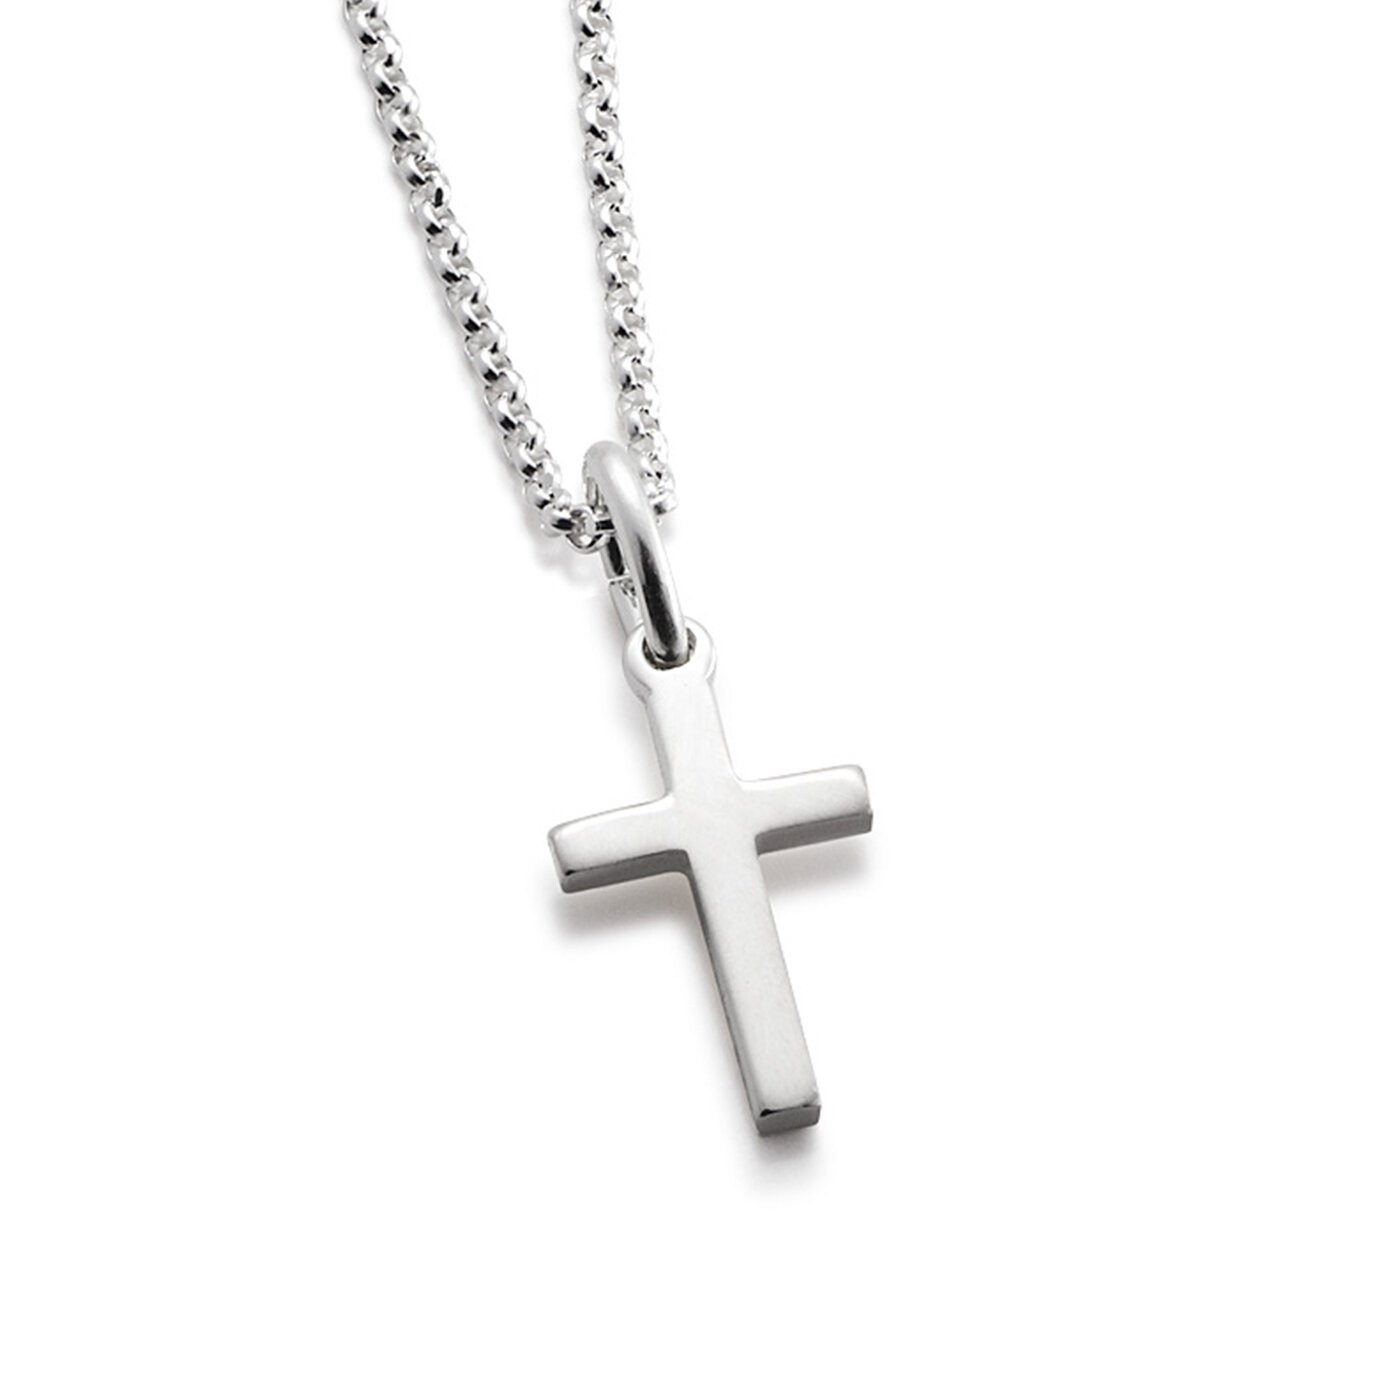 Miniature Faith necklace   